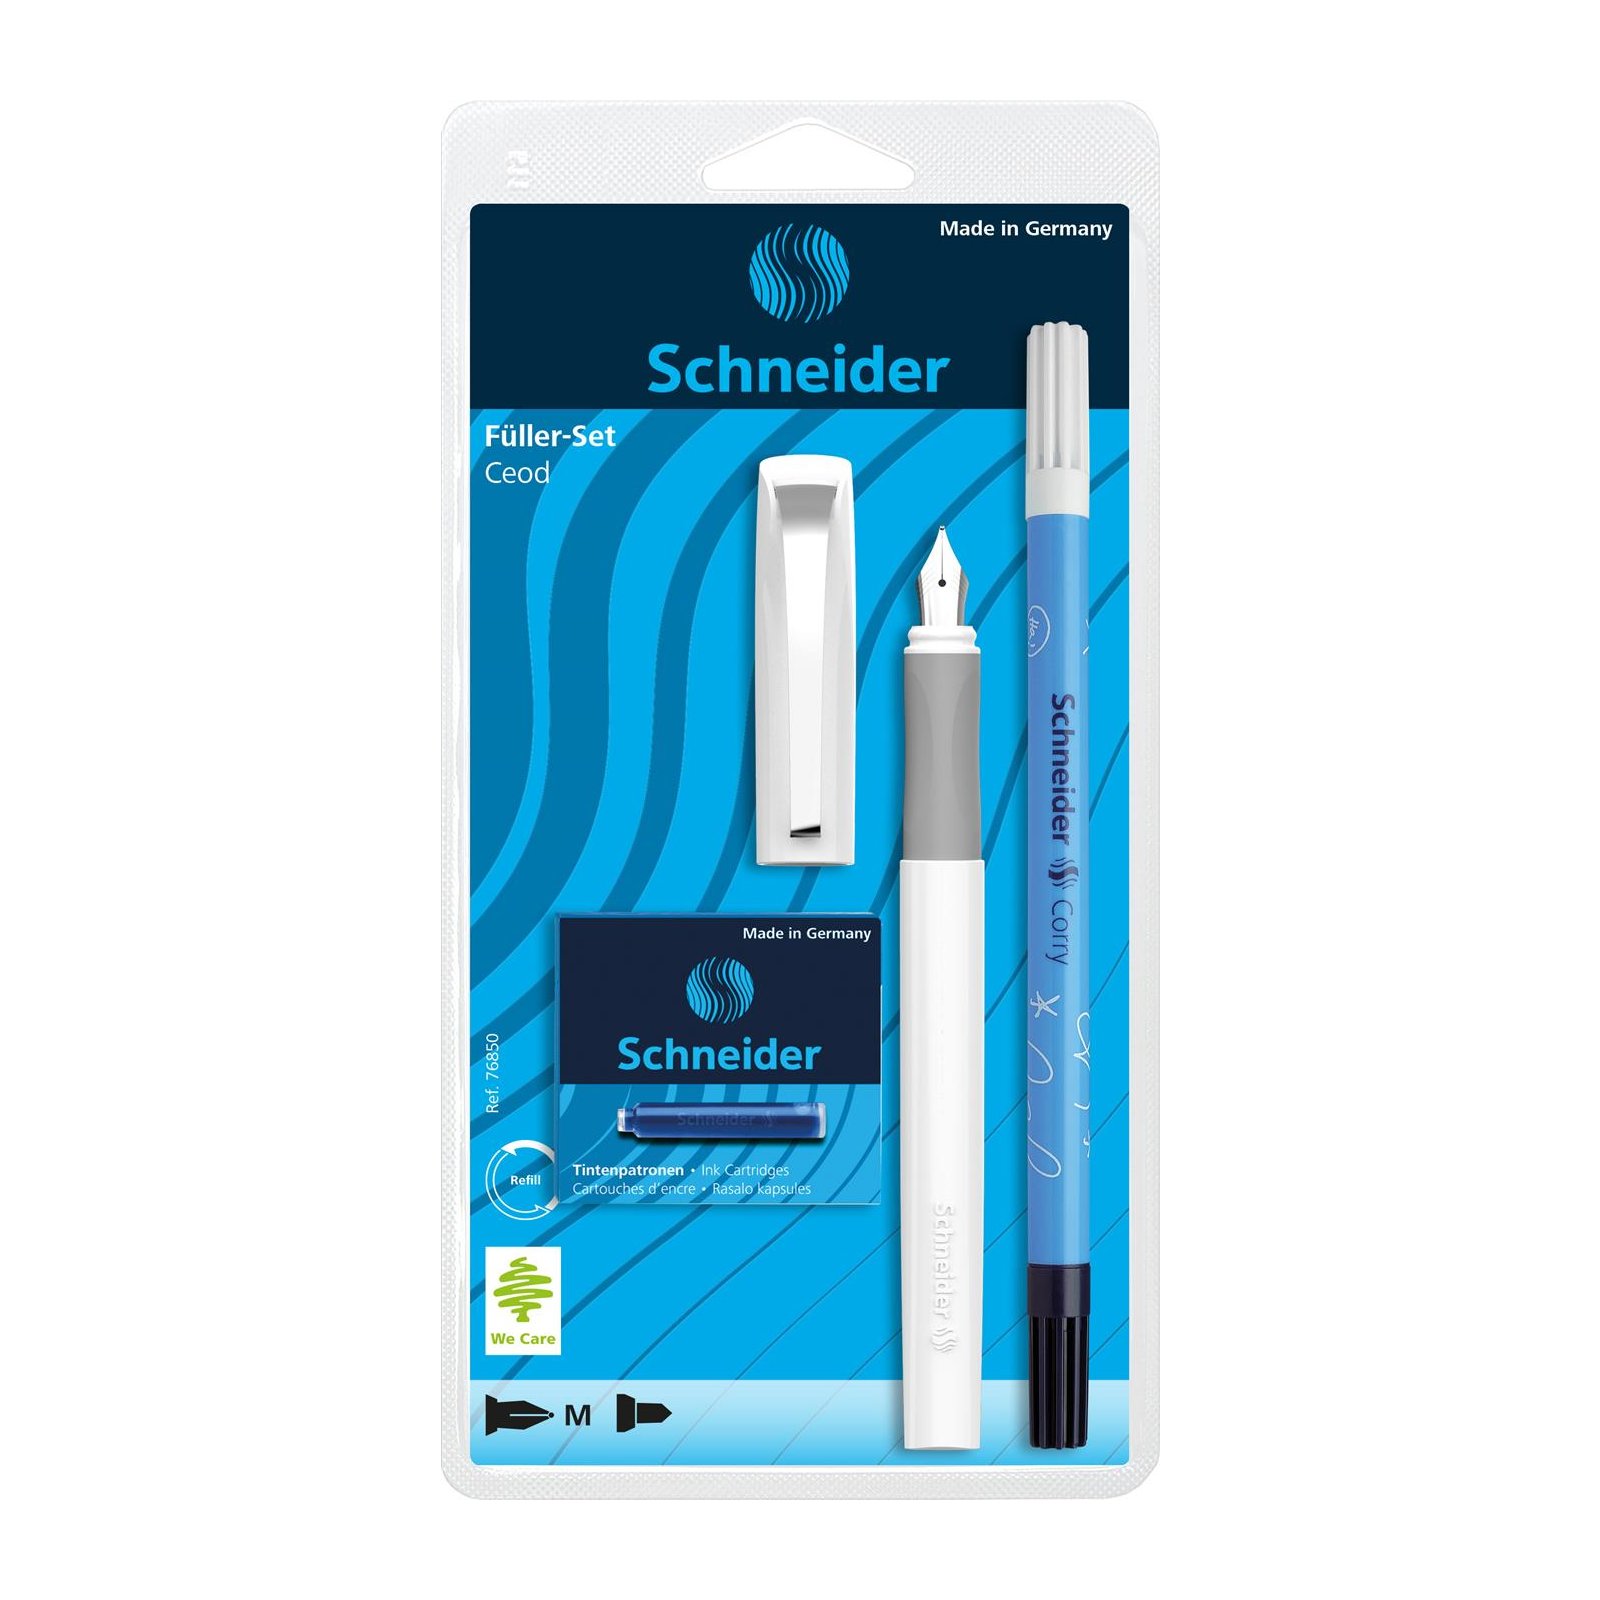 Schneider Ceod Classic Fuellhalter-Set 3-teilig schul, 1153346 8,99 weiss € 